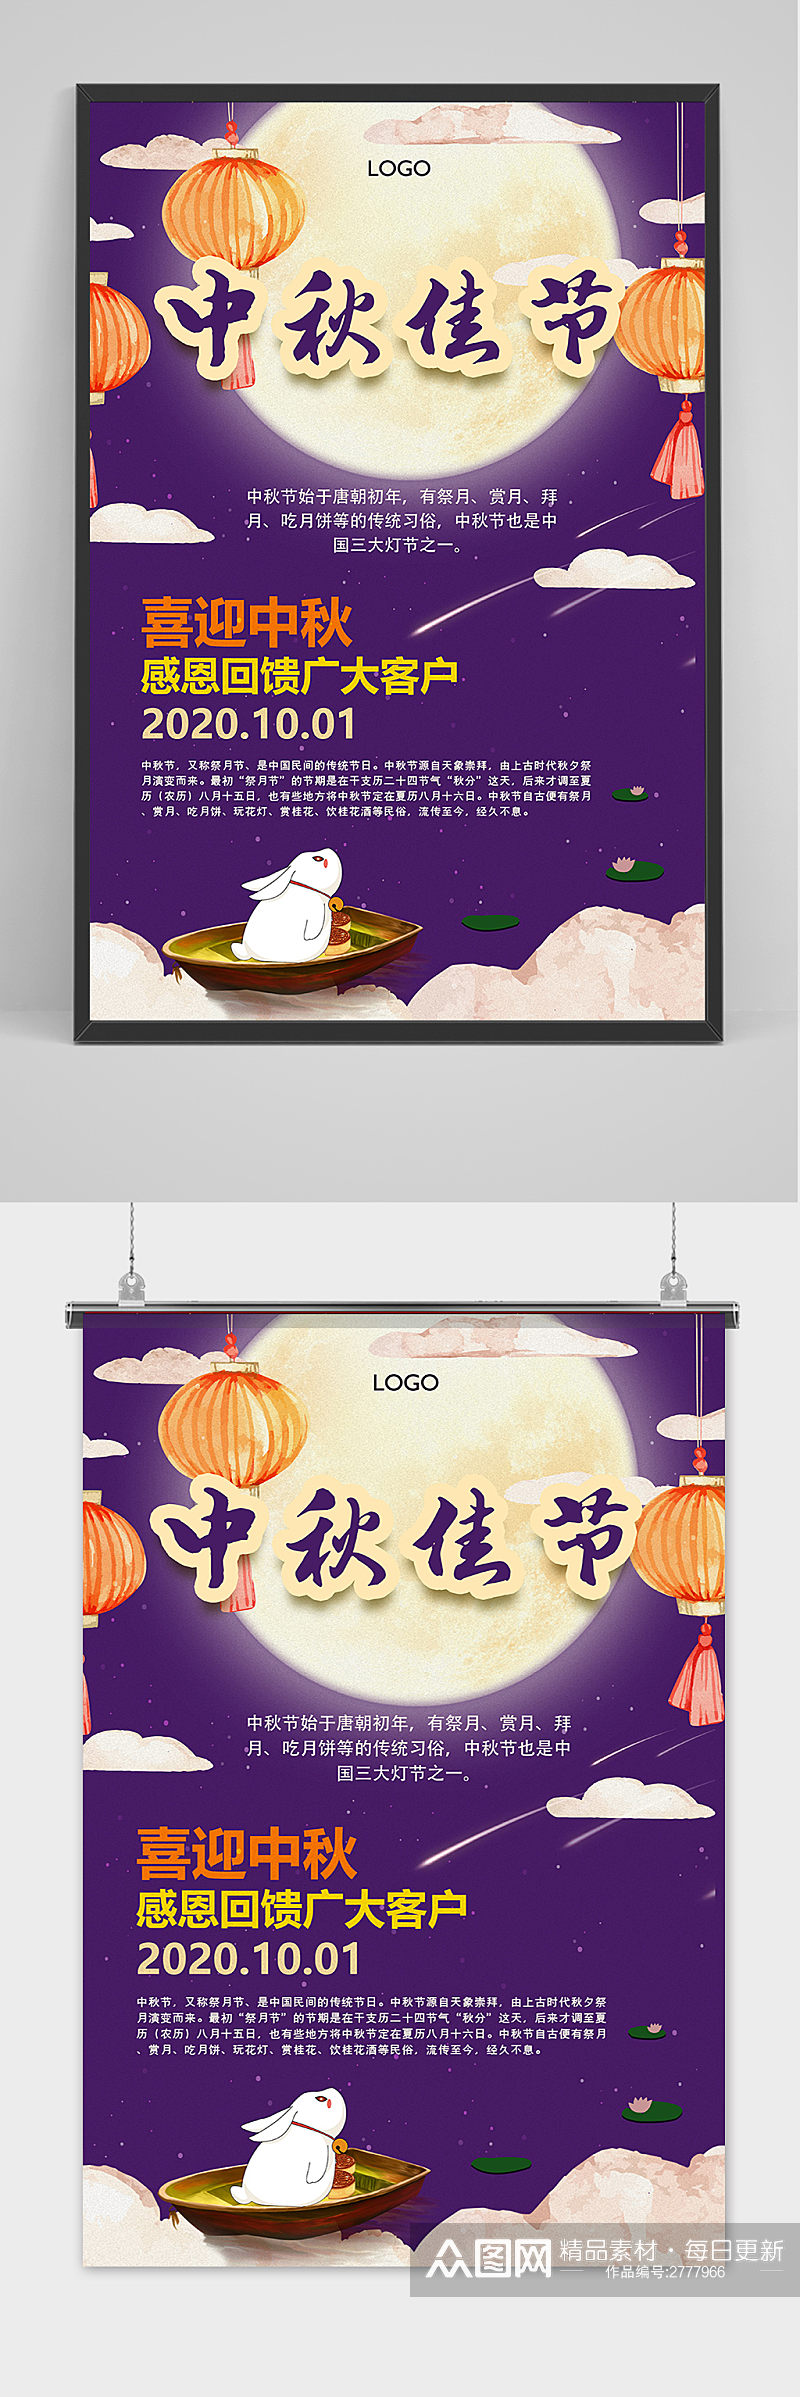 创意简约传统中国风中秋节海报素材